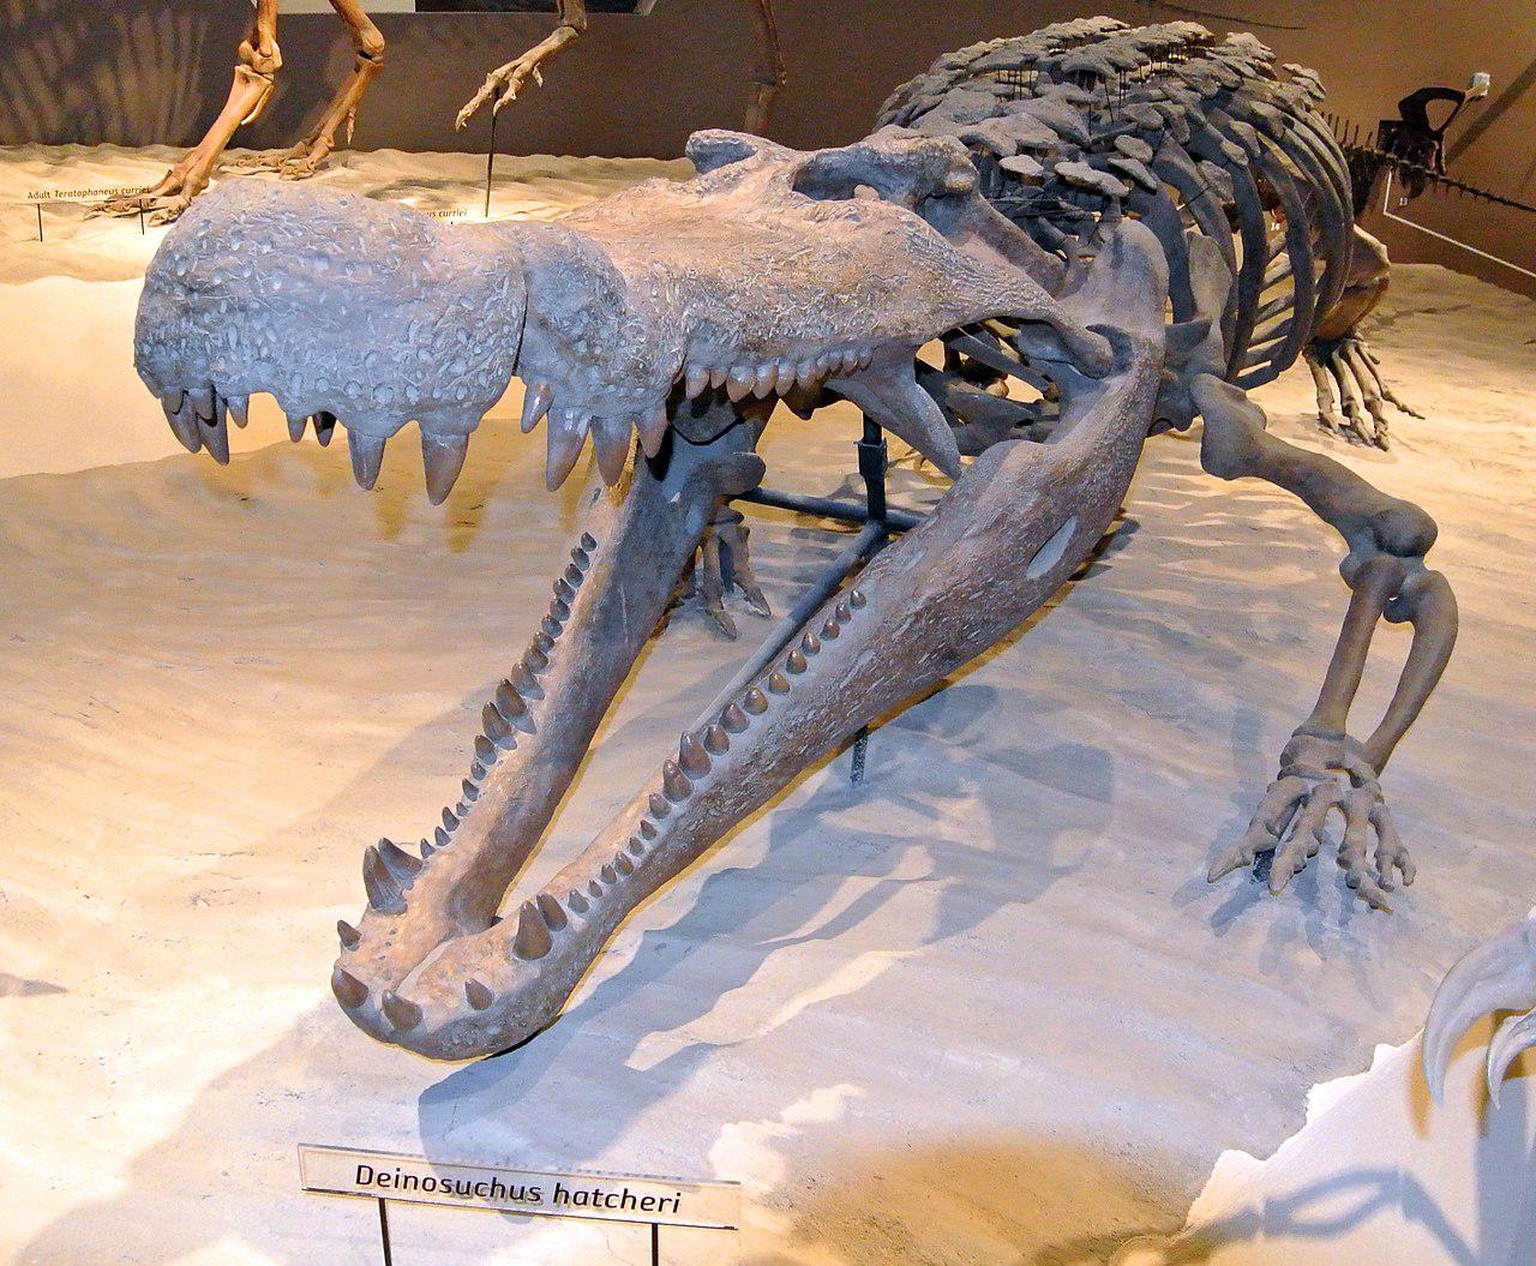 Skelettrekonstruktion von Deinosuchus im Natural History Museum von Utah.
https://de.wikipedia.org/wiki/Deinosuchus#/media/Datei:Deinosuchus_hatcheri_052913.jpg